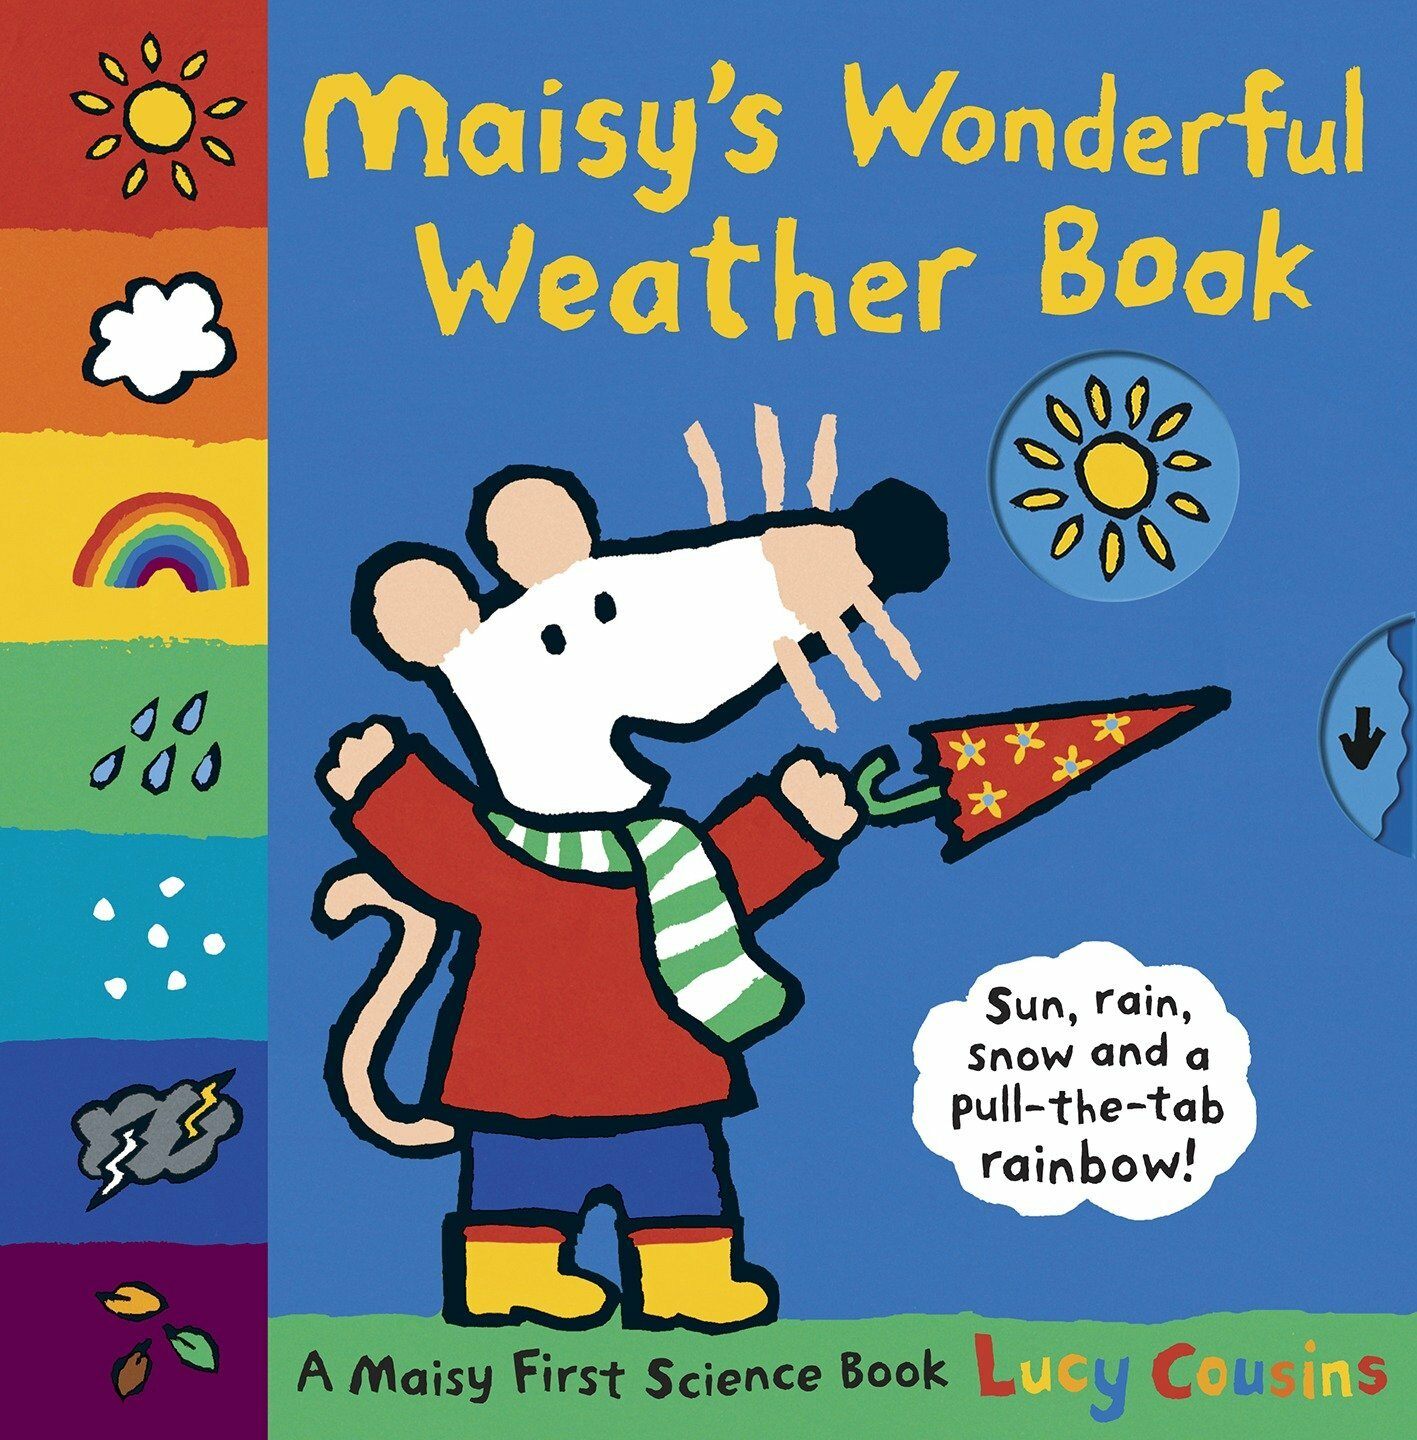 Maisys wonderful weather book